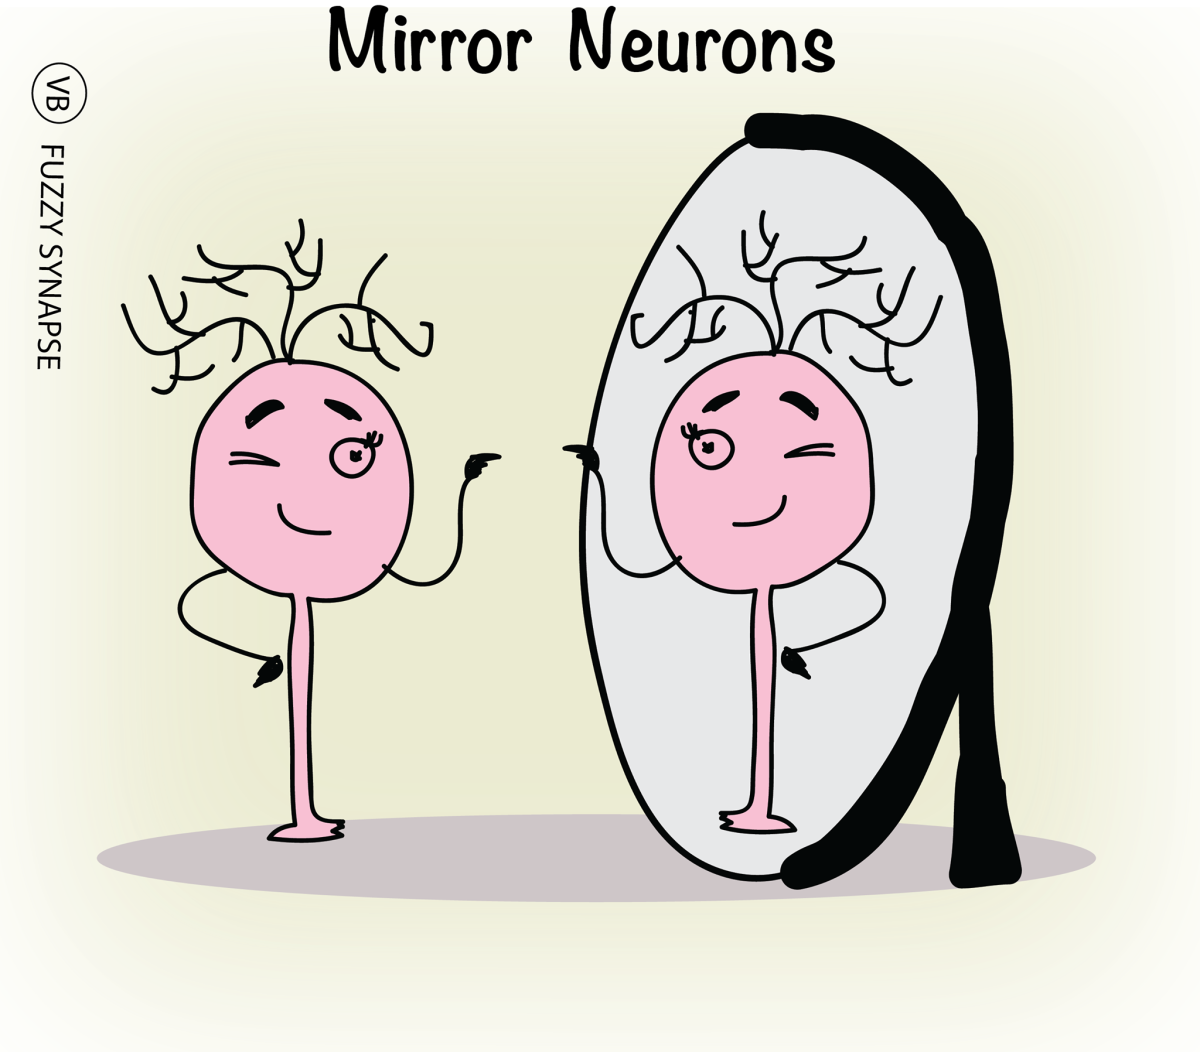 Bild 3: Spiegelneuronen Illustration.